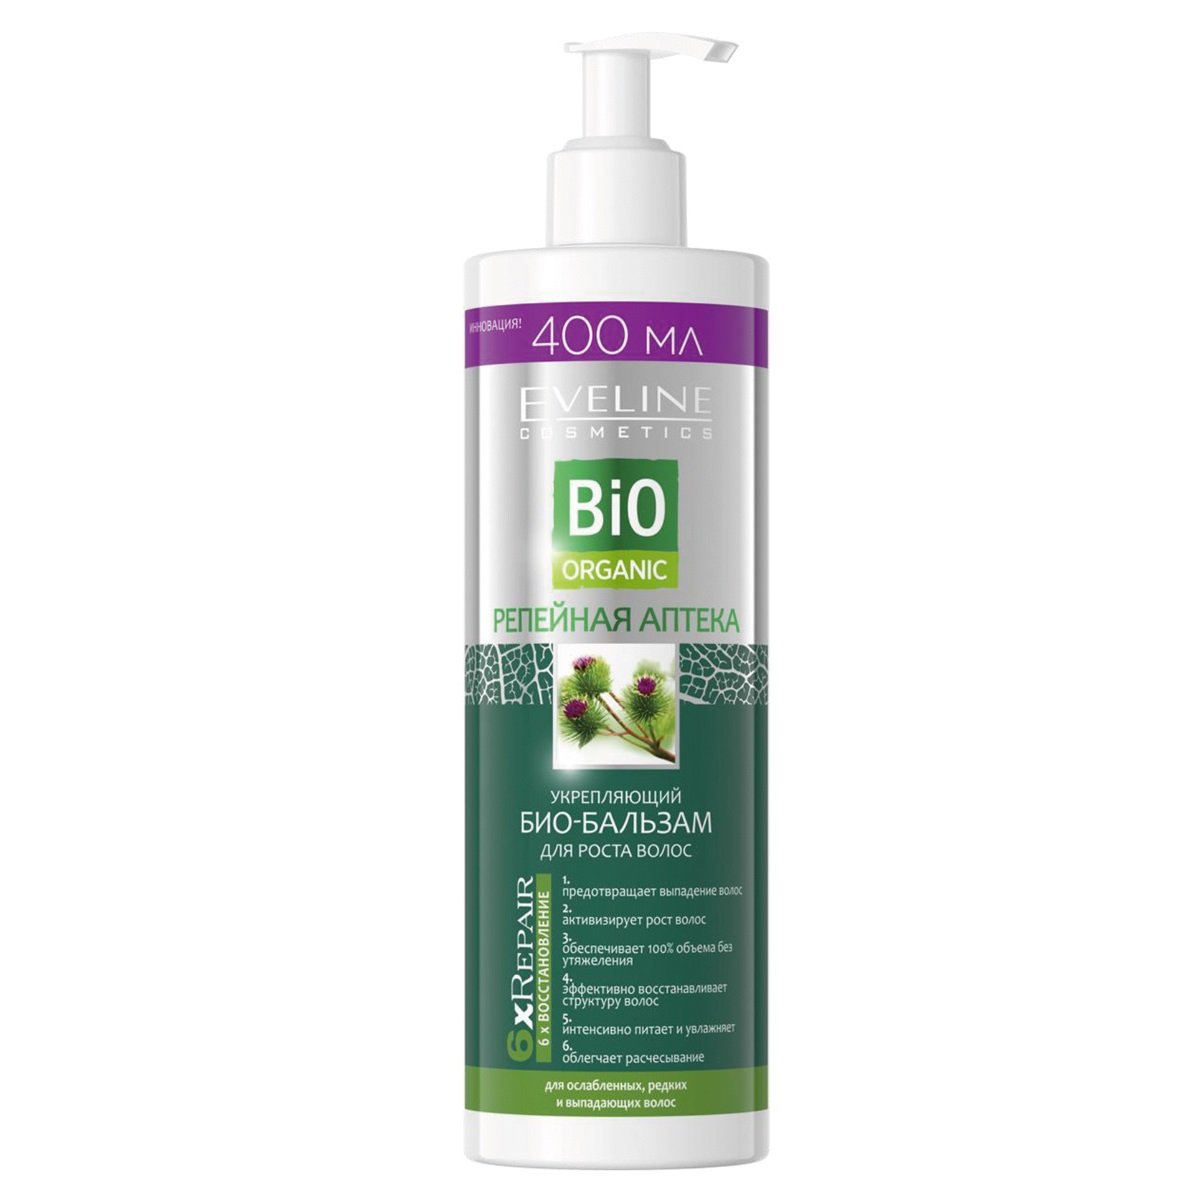 Зміцнюючий біо-бальзам для росту волосся Eveline Реп'яхова Аптека Bio Organic, 400 мл (B400BOOD) - фото 1